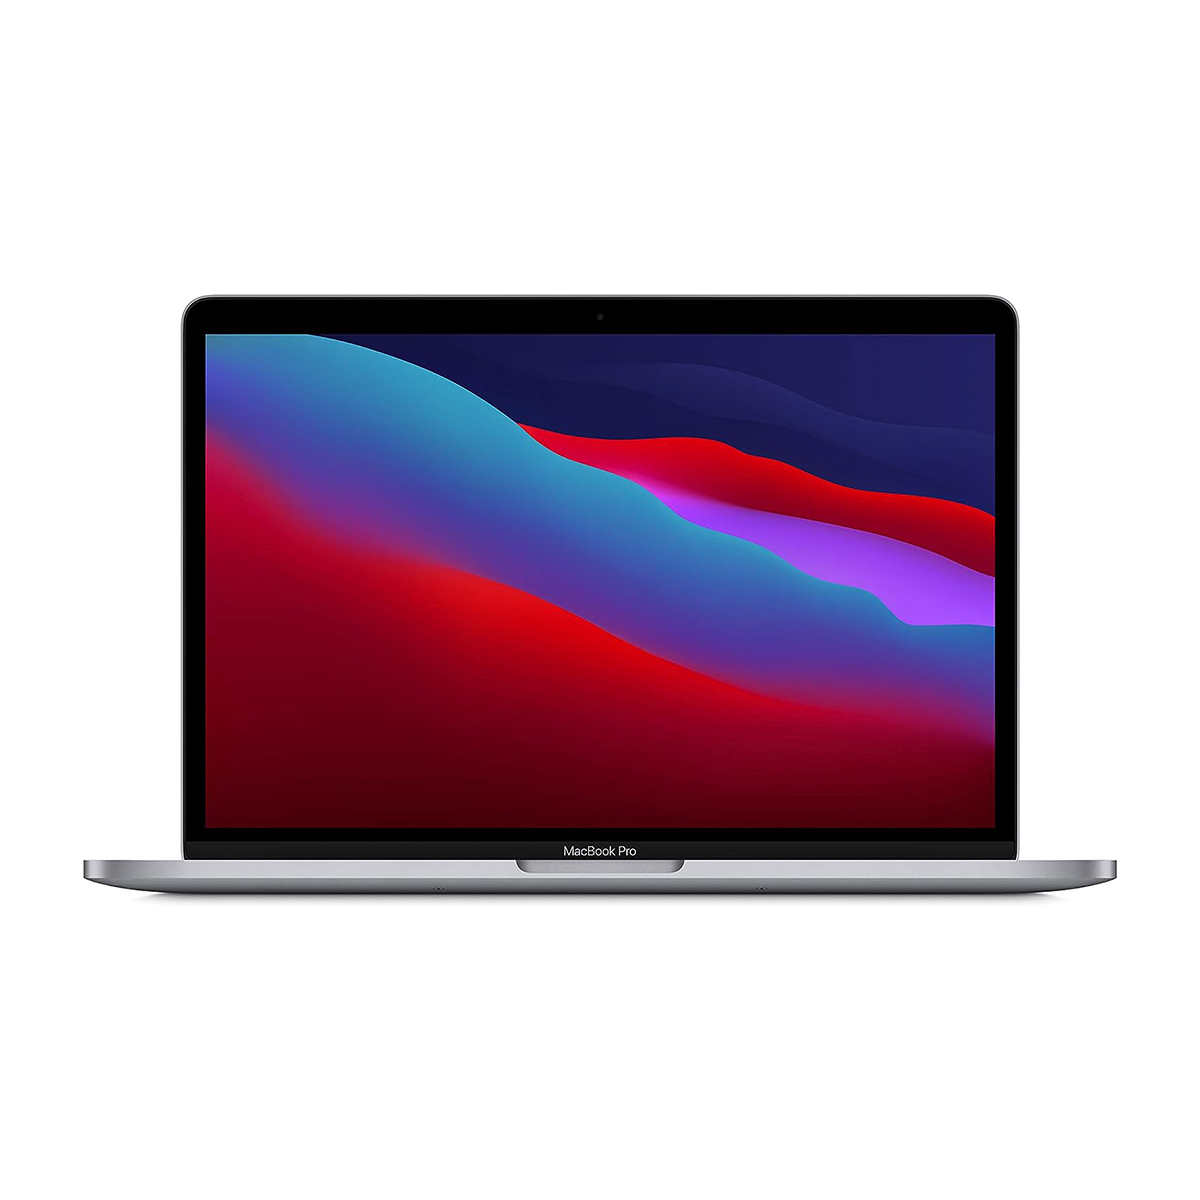  لپ تاپ 13 اینچی اپل مدل MacBook Pro MYD92 2020 همراه با تاچ بار